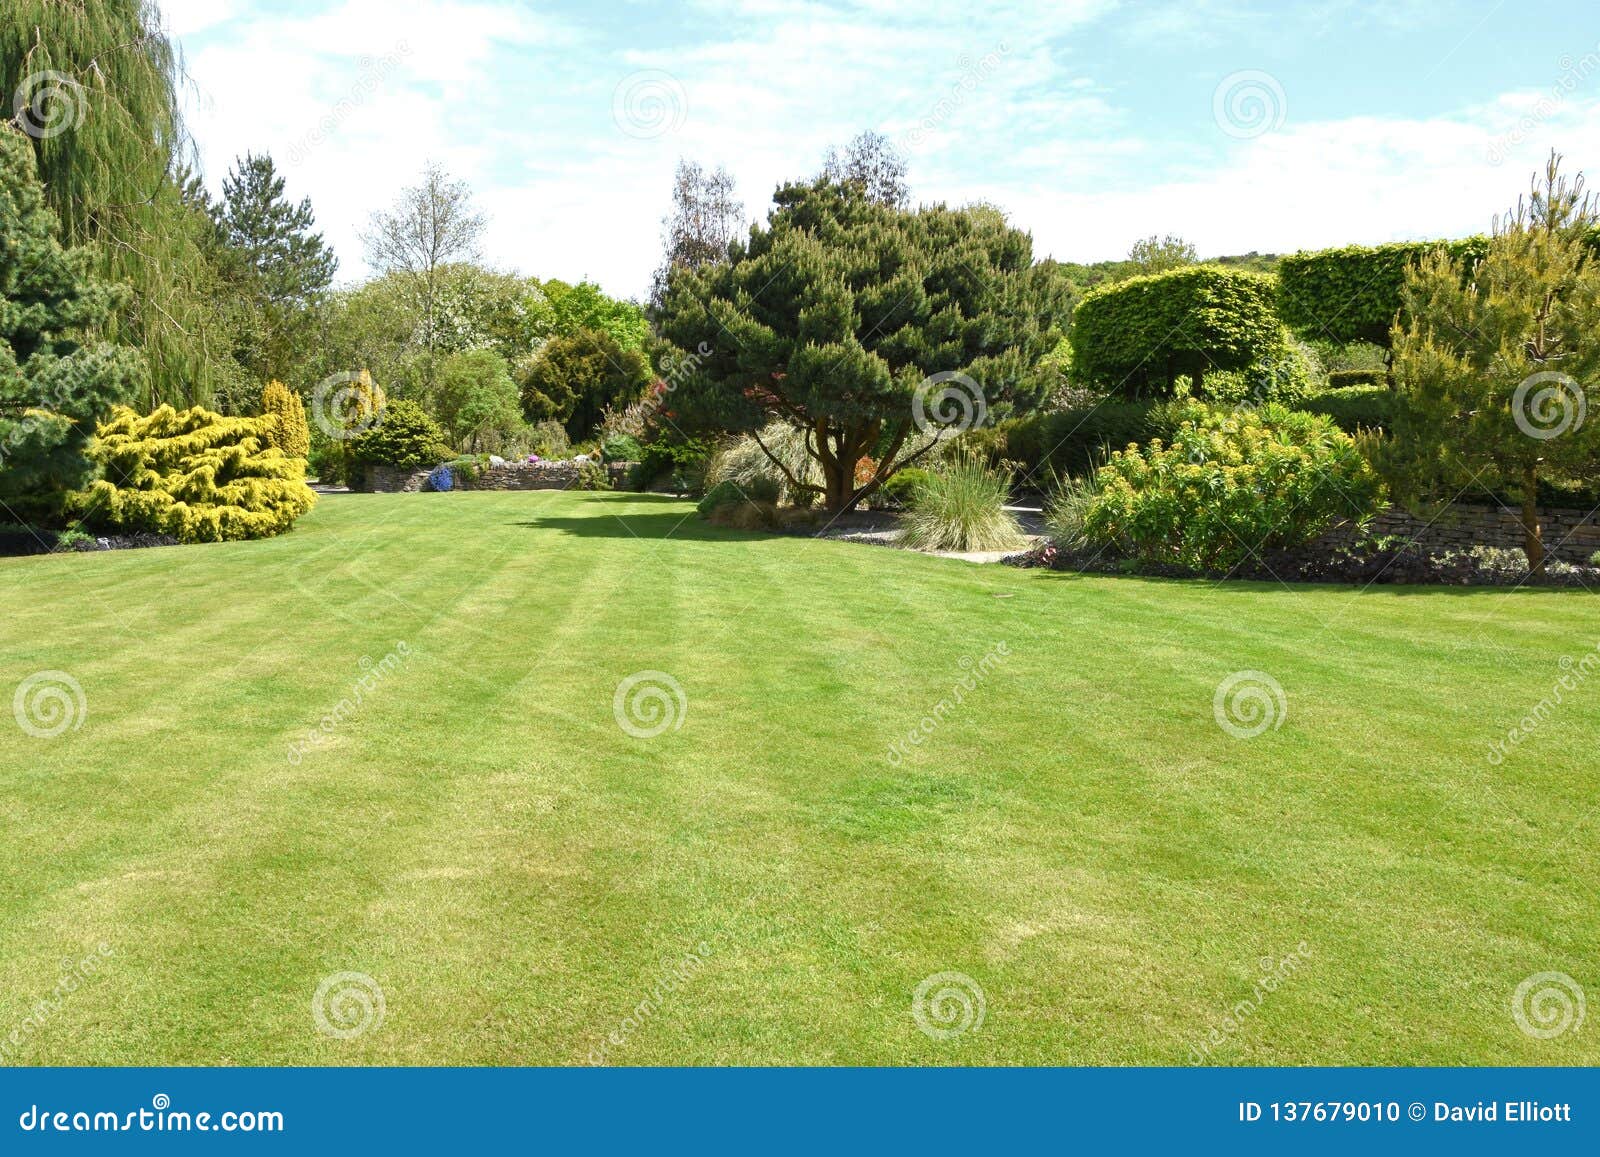 a perfect english country garden